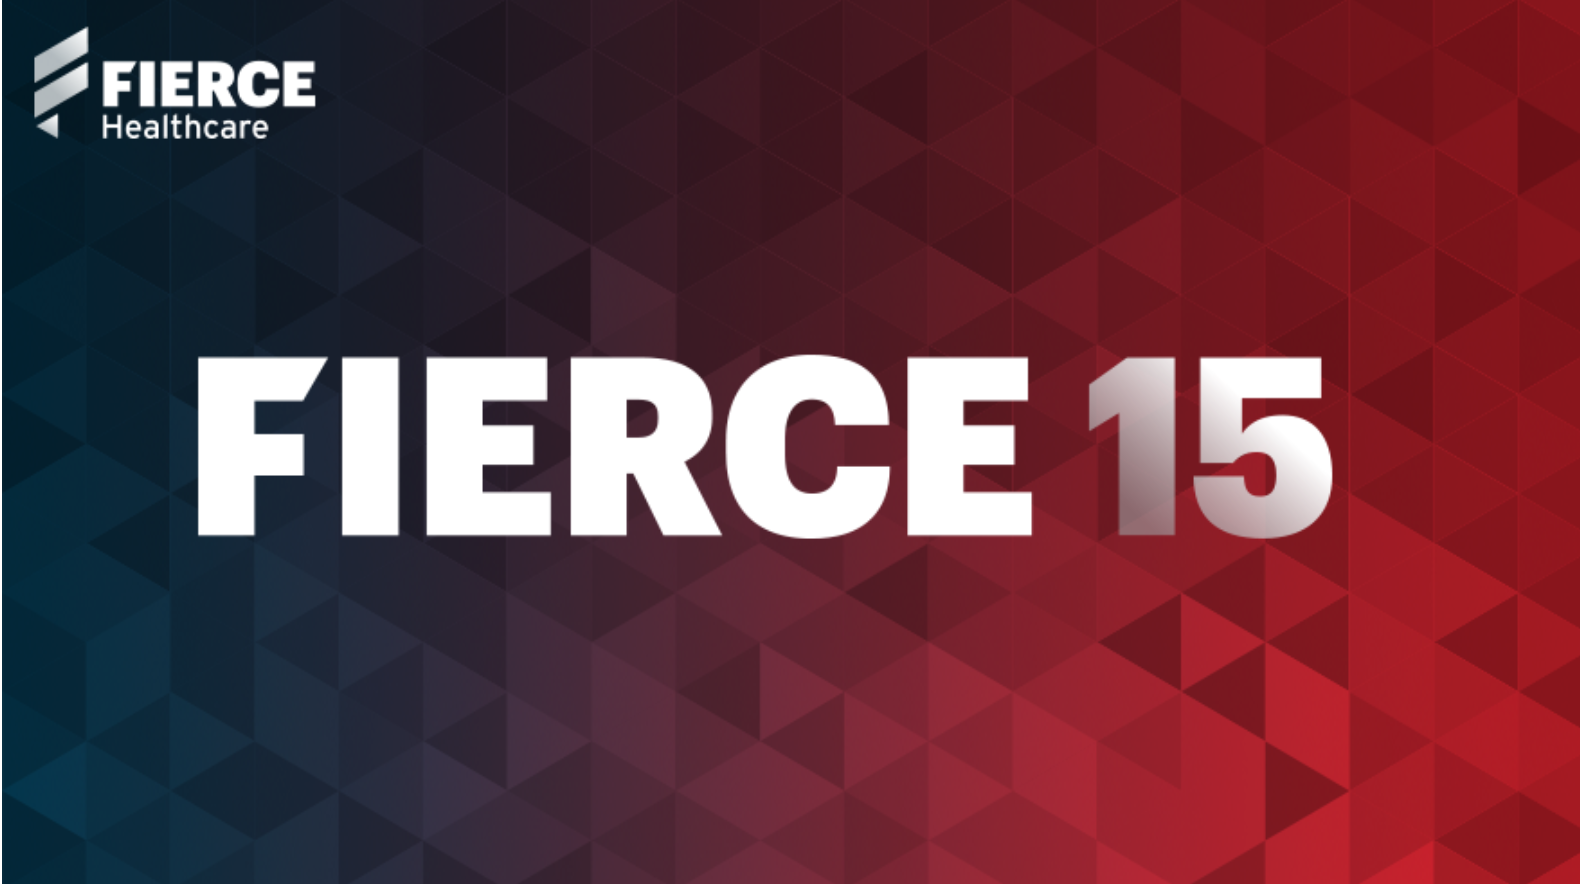 Fierce 15 Healthcare Logo